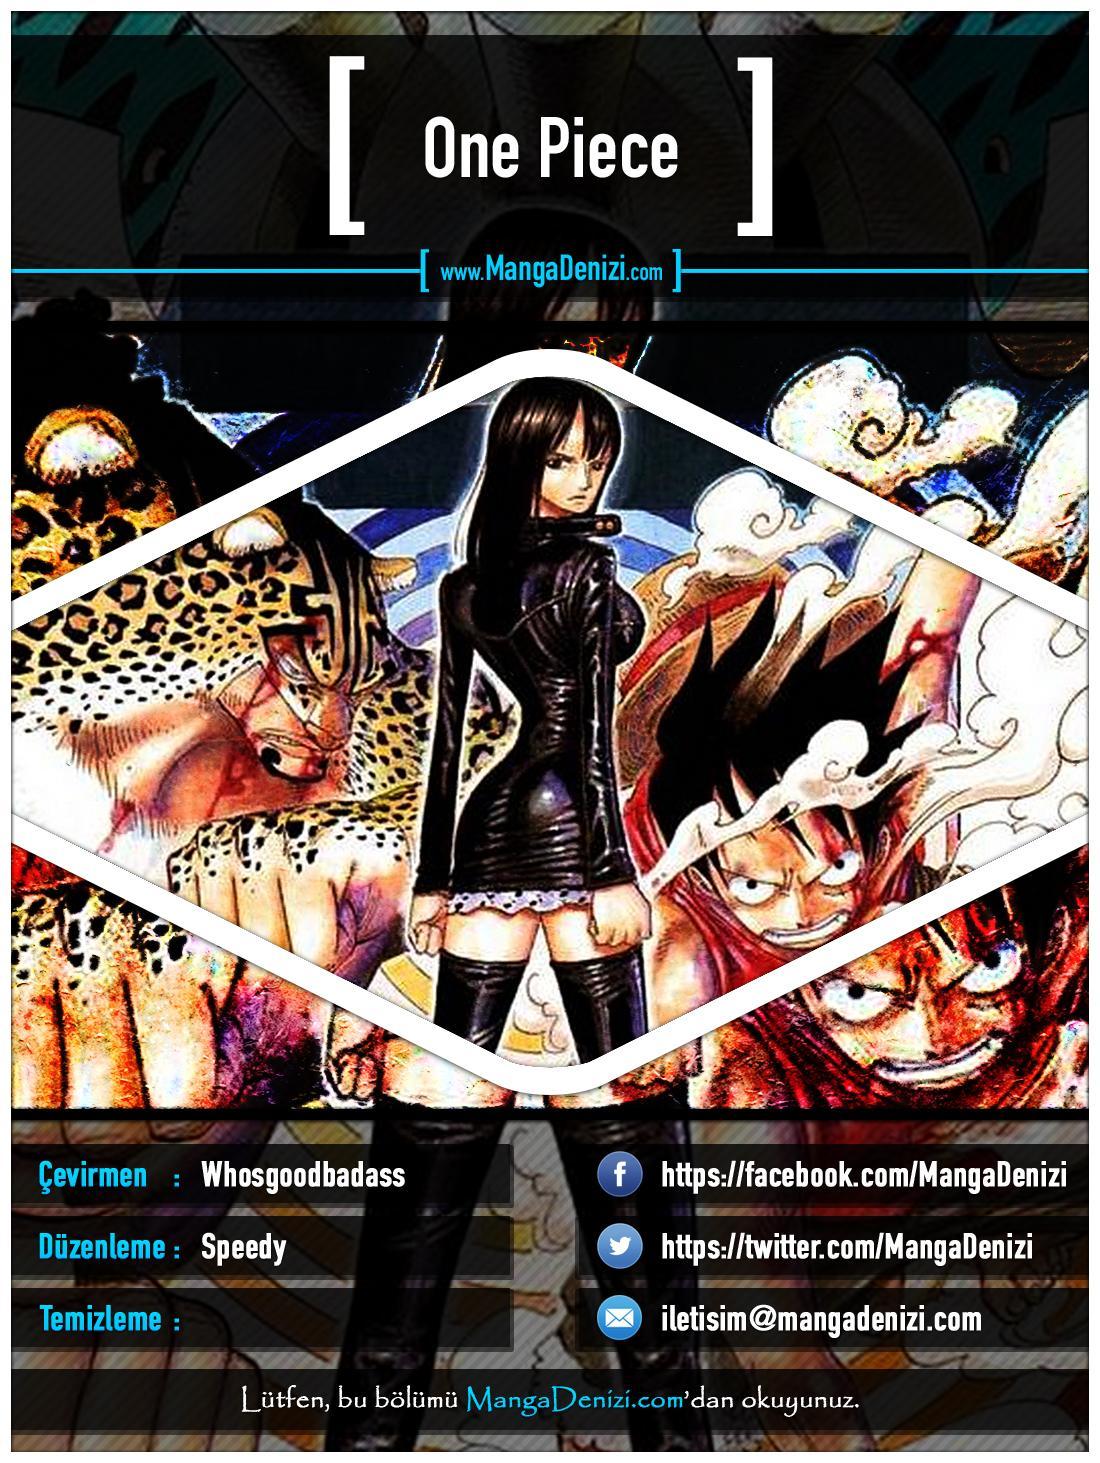 One Piece [Renkli] mangasının 0371 bölümünün 1. sayfasını okuyorsunuz.